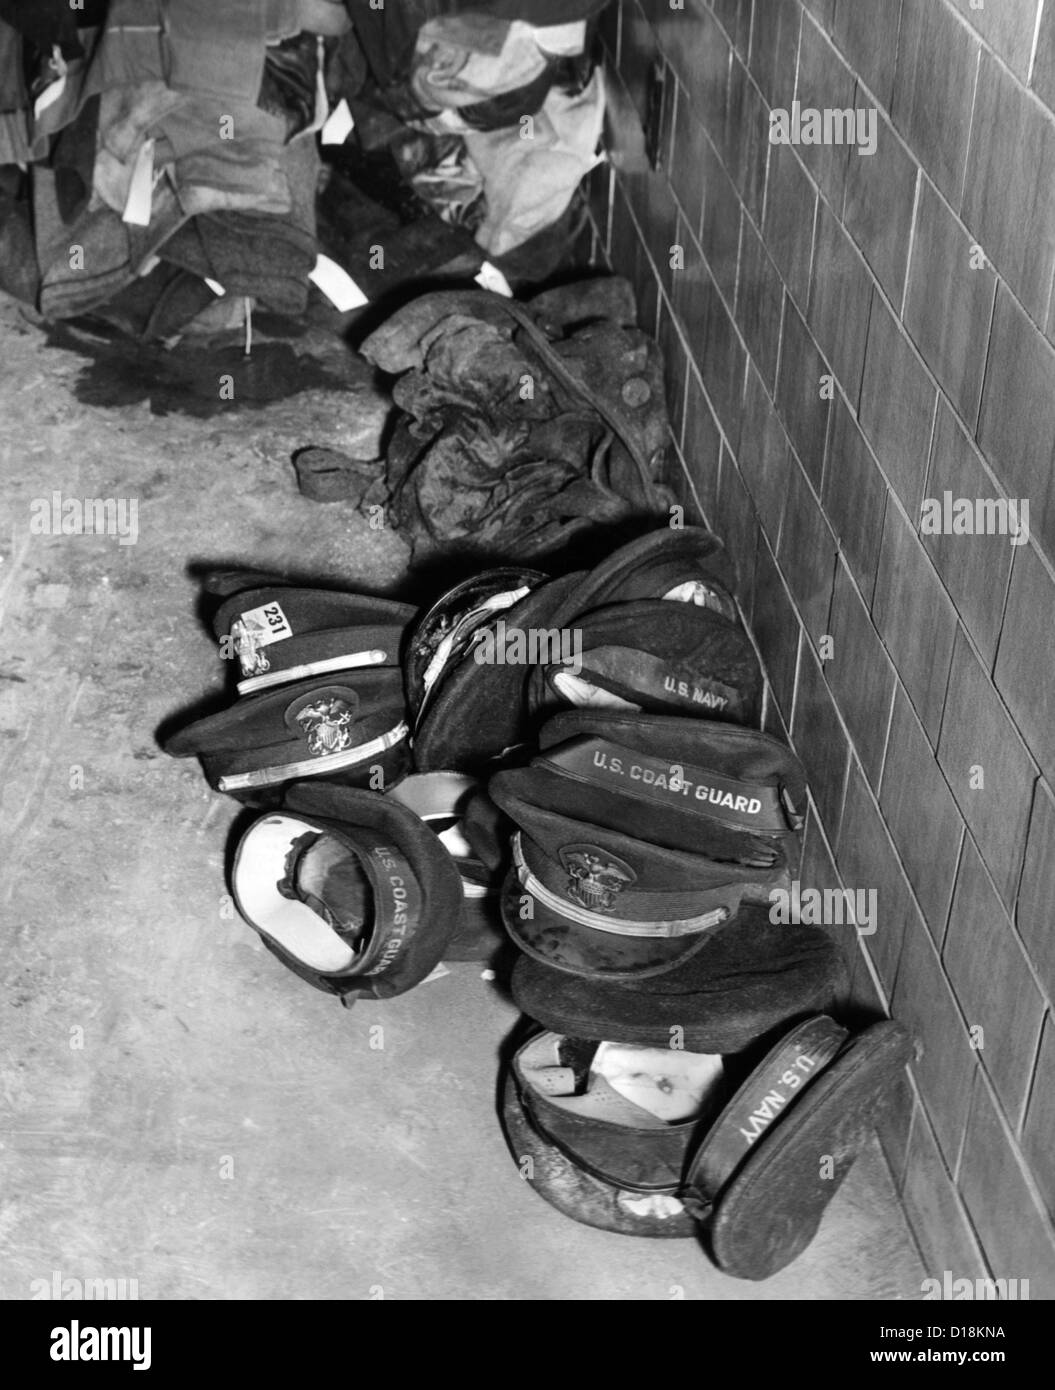 Coconut Grove Nightclub Fire. Servizio uomini cappelli aided identificazione di coloro che furono bruciati oltre riconoscimento nel nov. Foto Stock